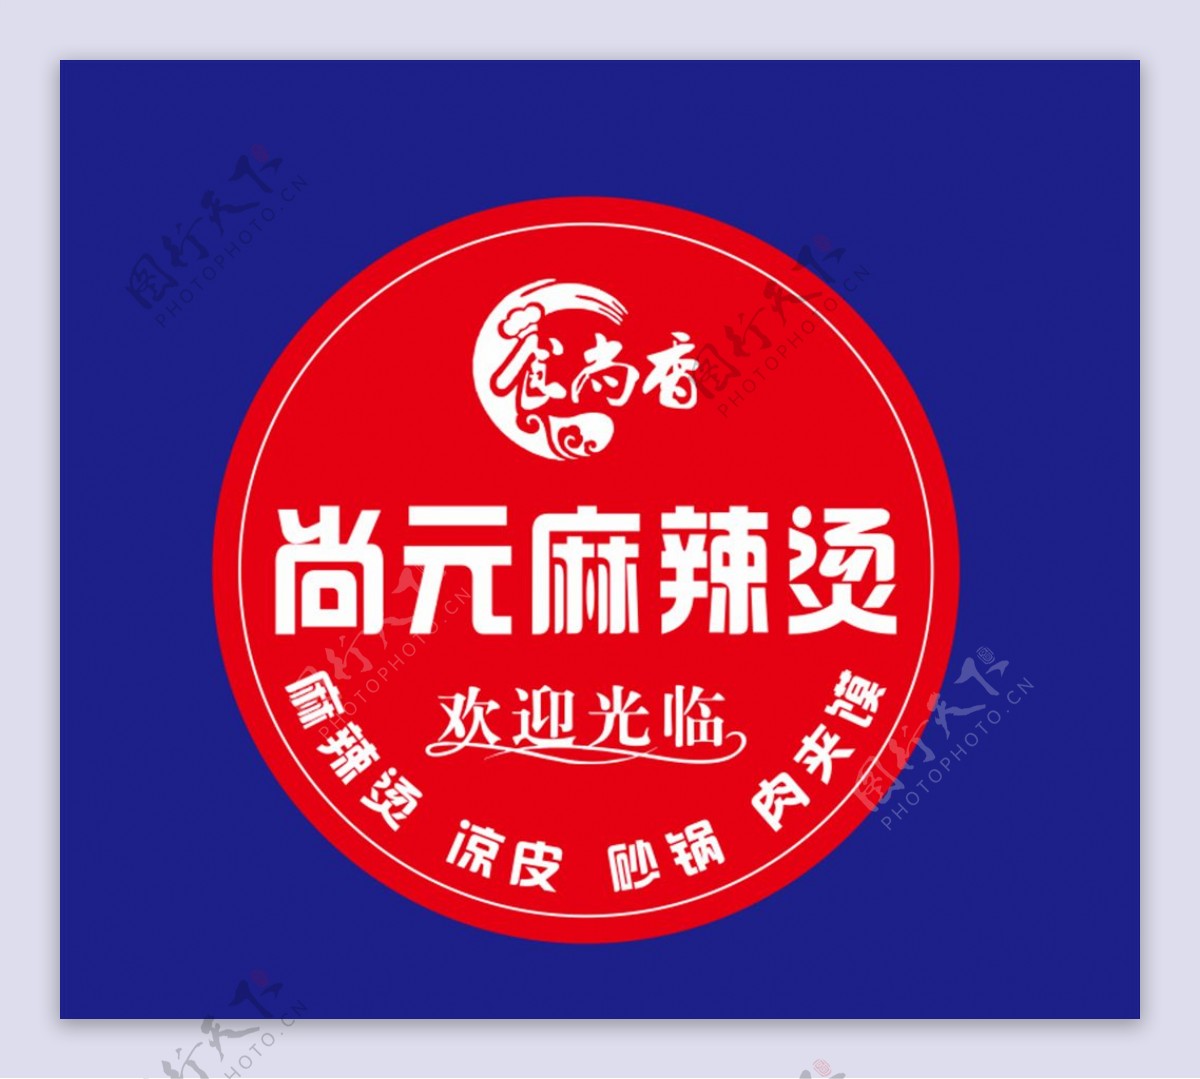 尚元麻辣烫logo图片